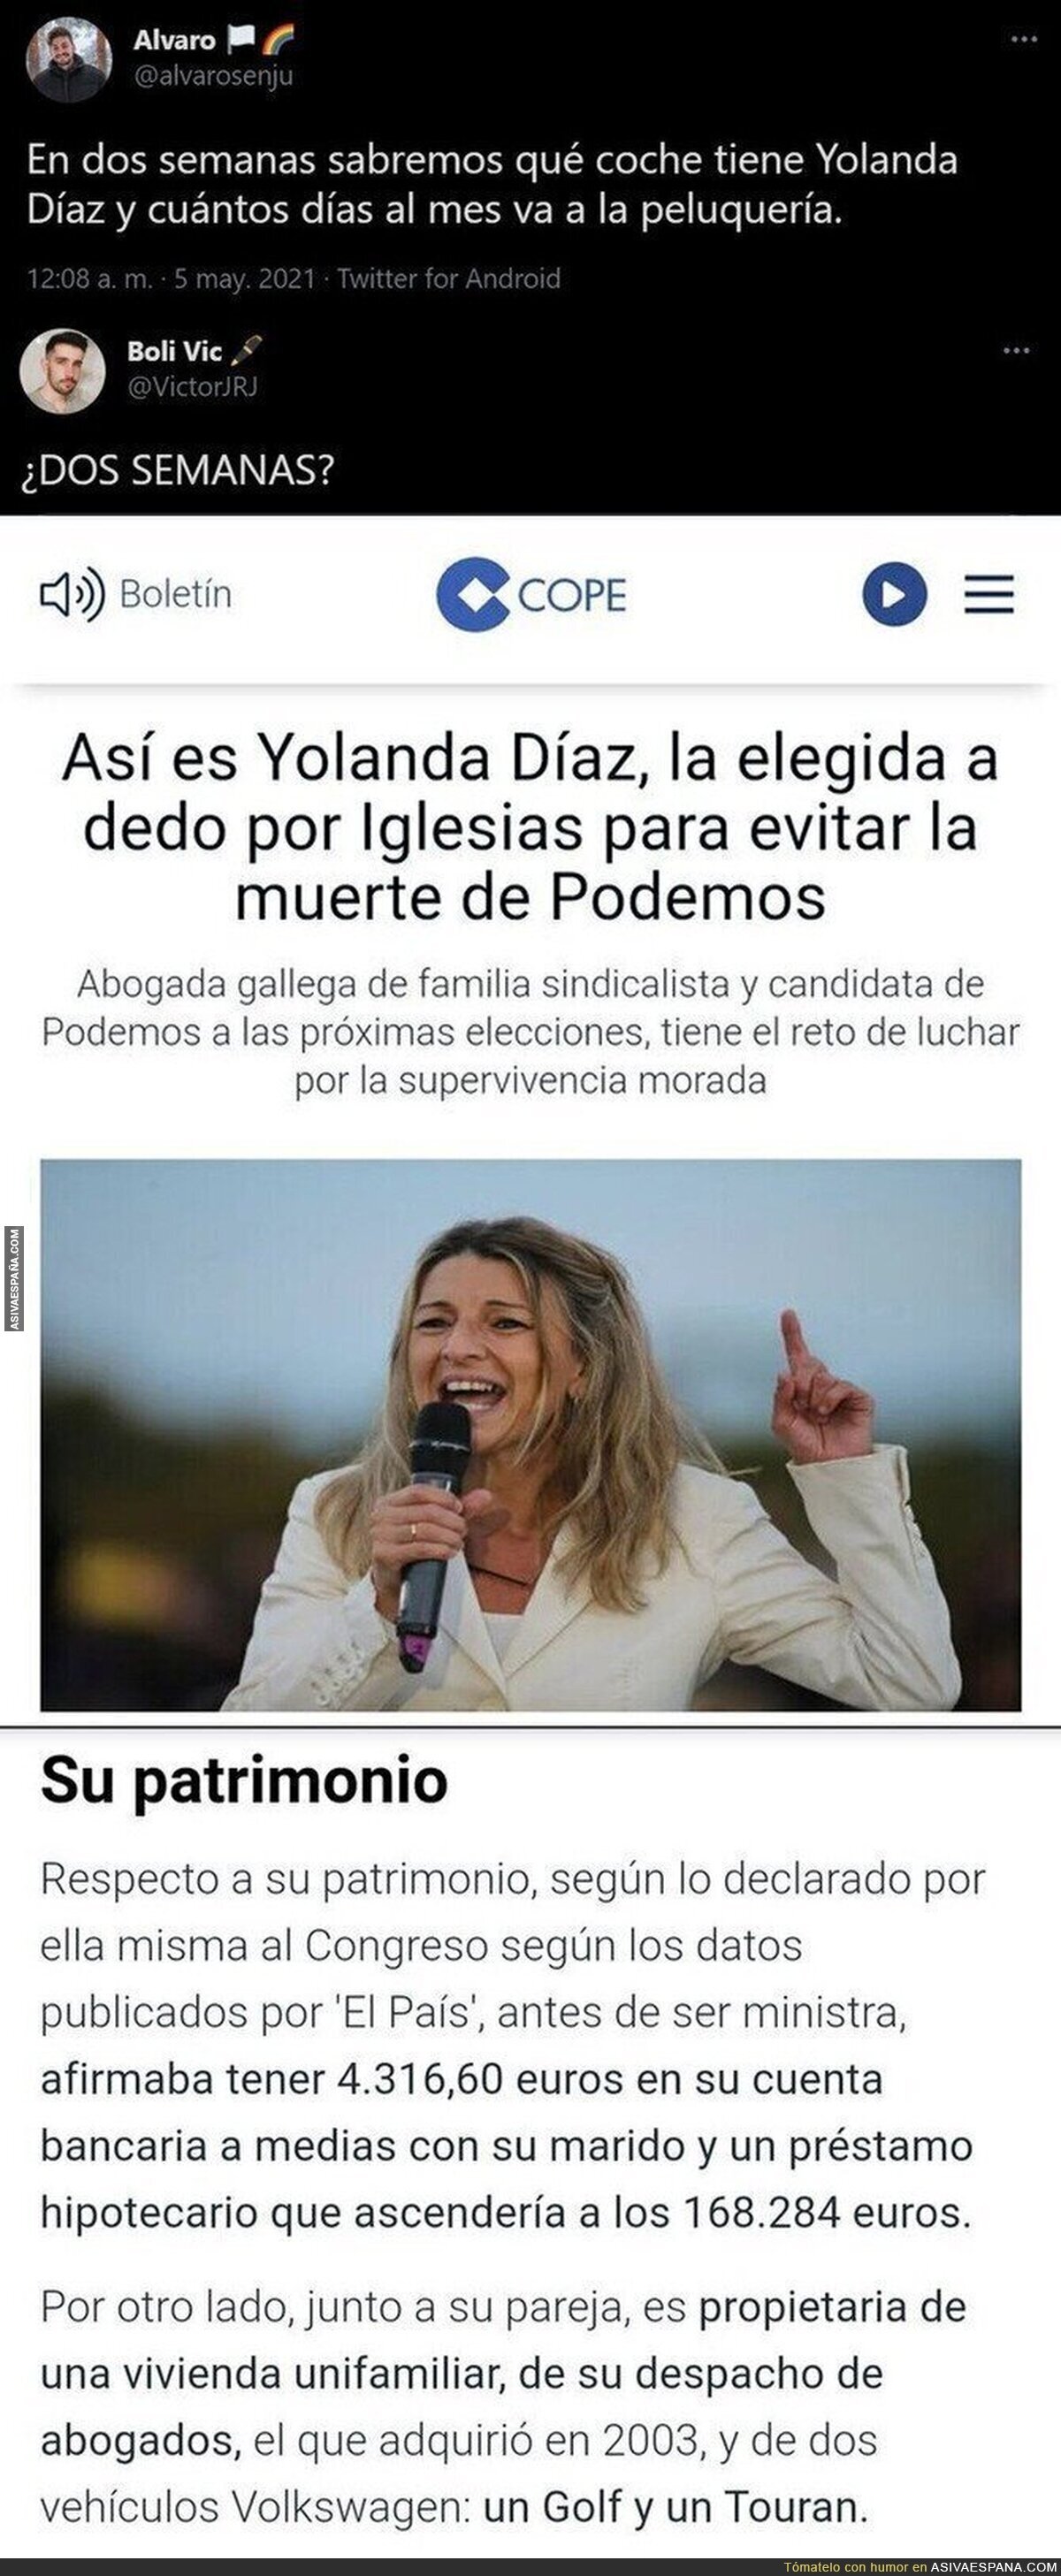 A pocas horas de dimitir Pablo Iglesias ya van a por Yolanda Díaz con estas informaciones